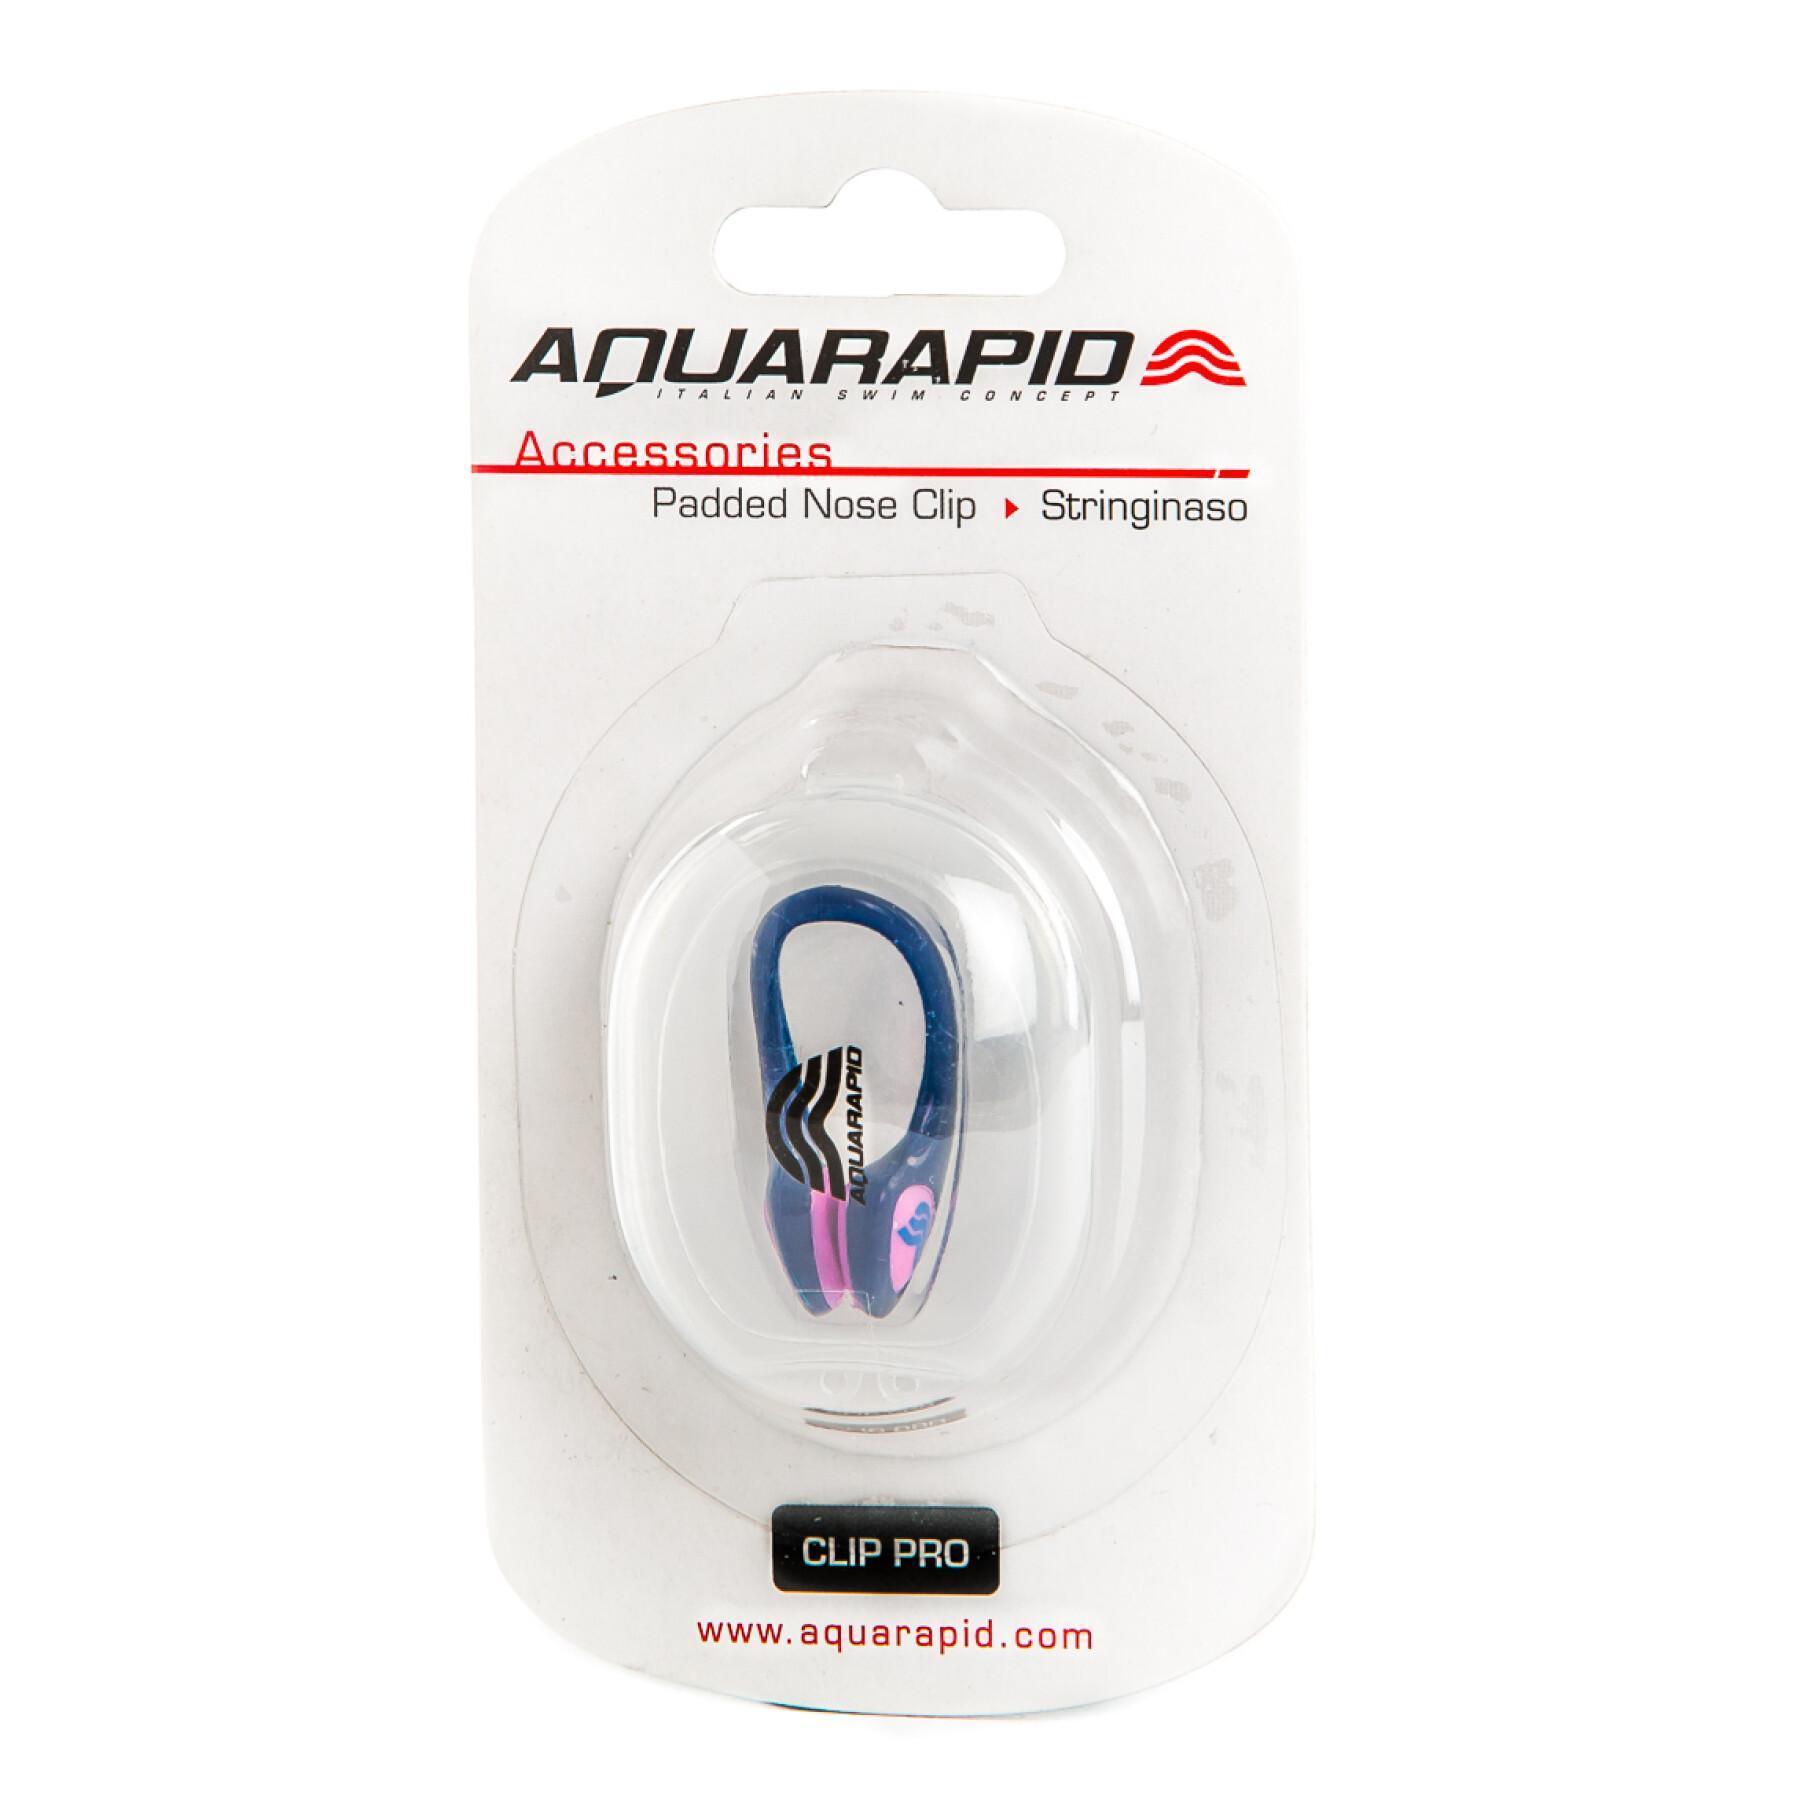 Näsclips för simning Aquarapid Clippro